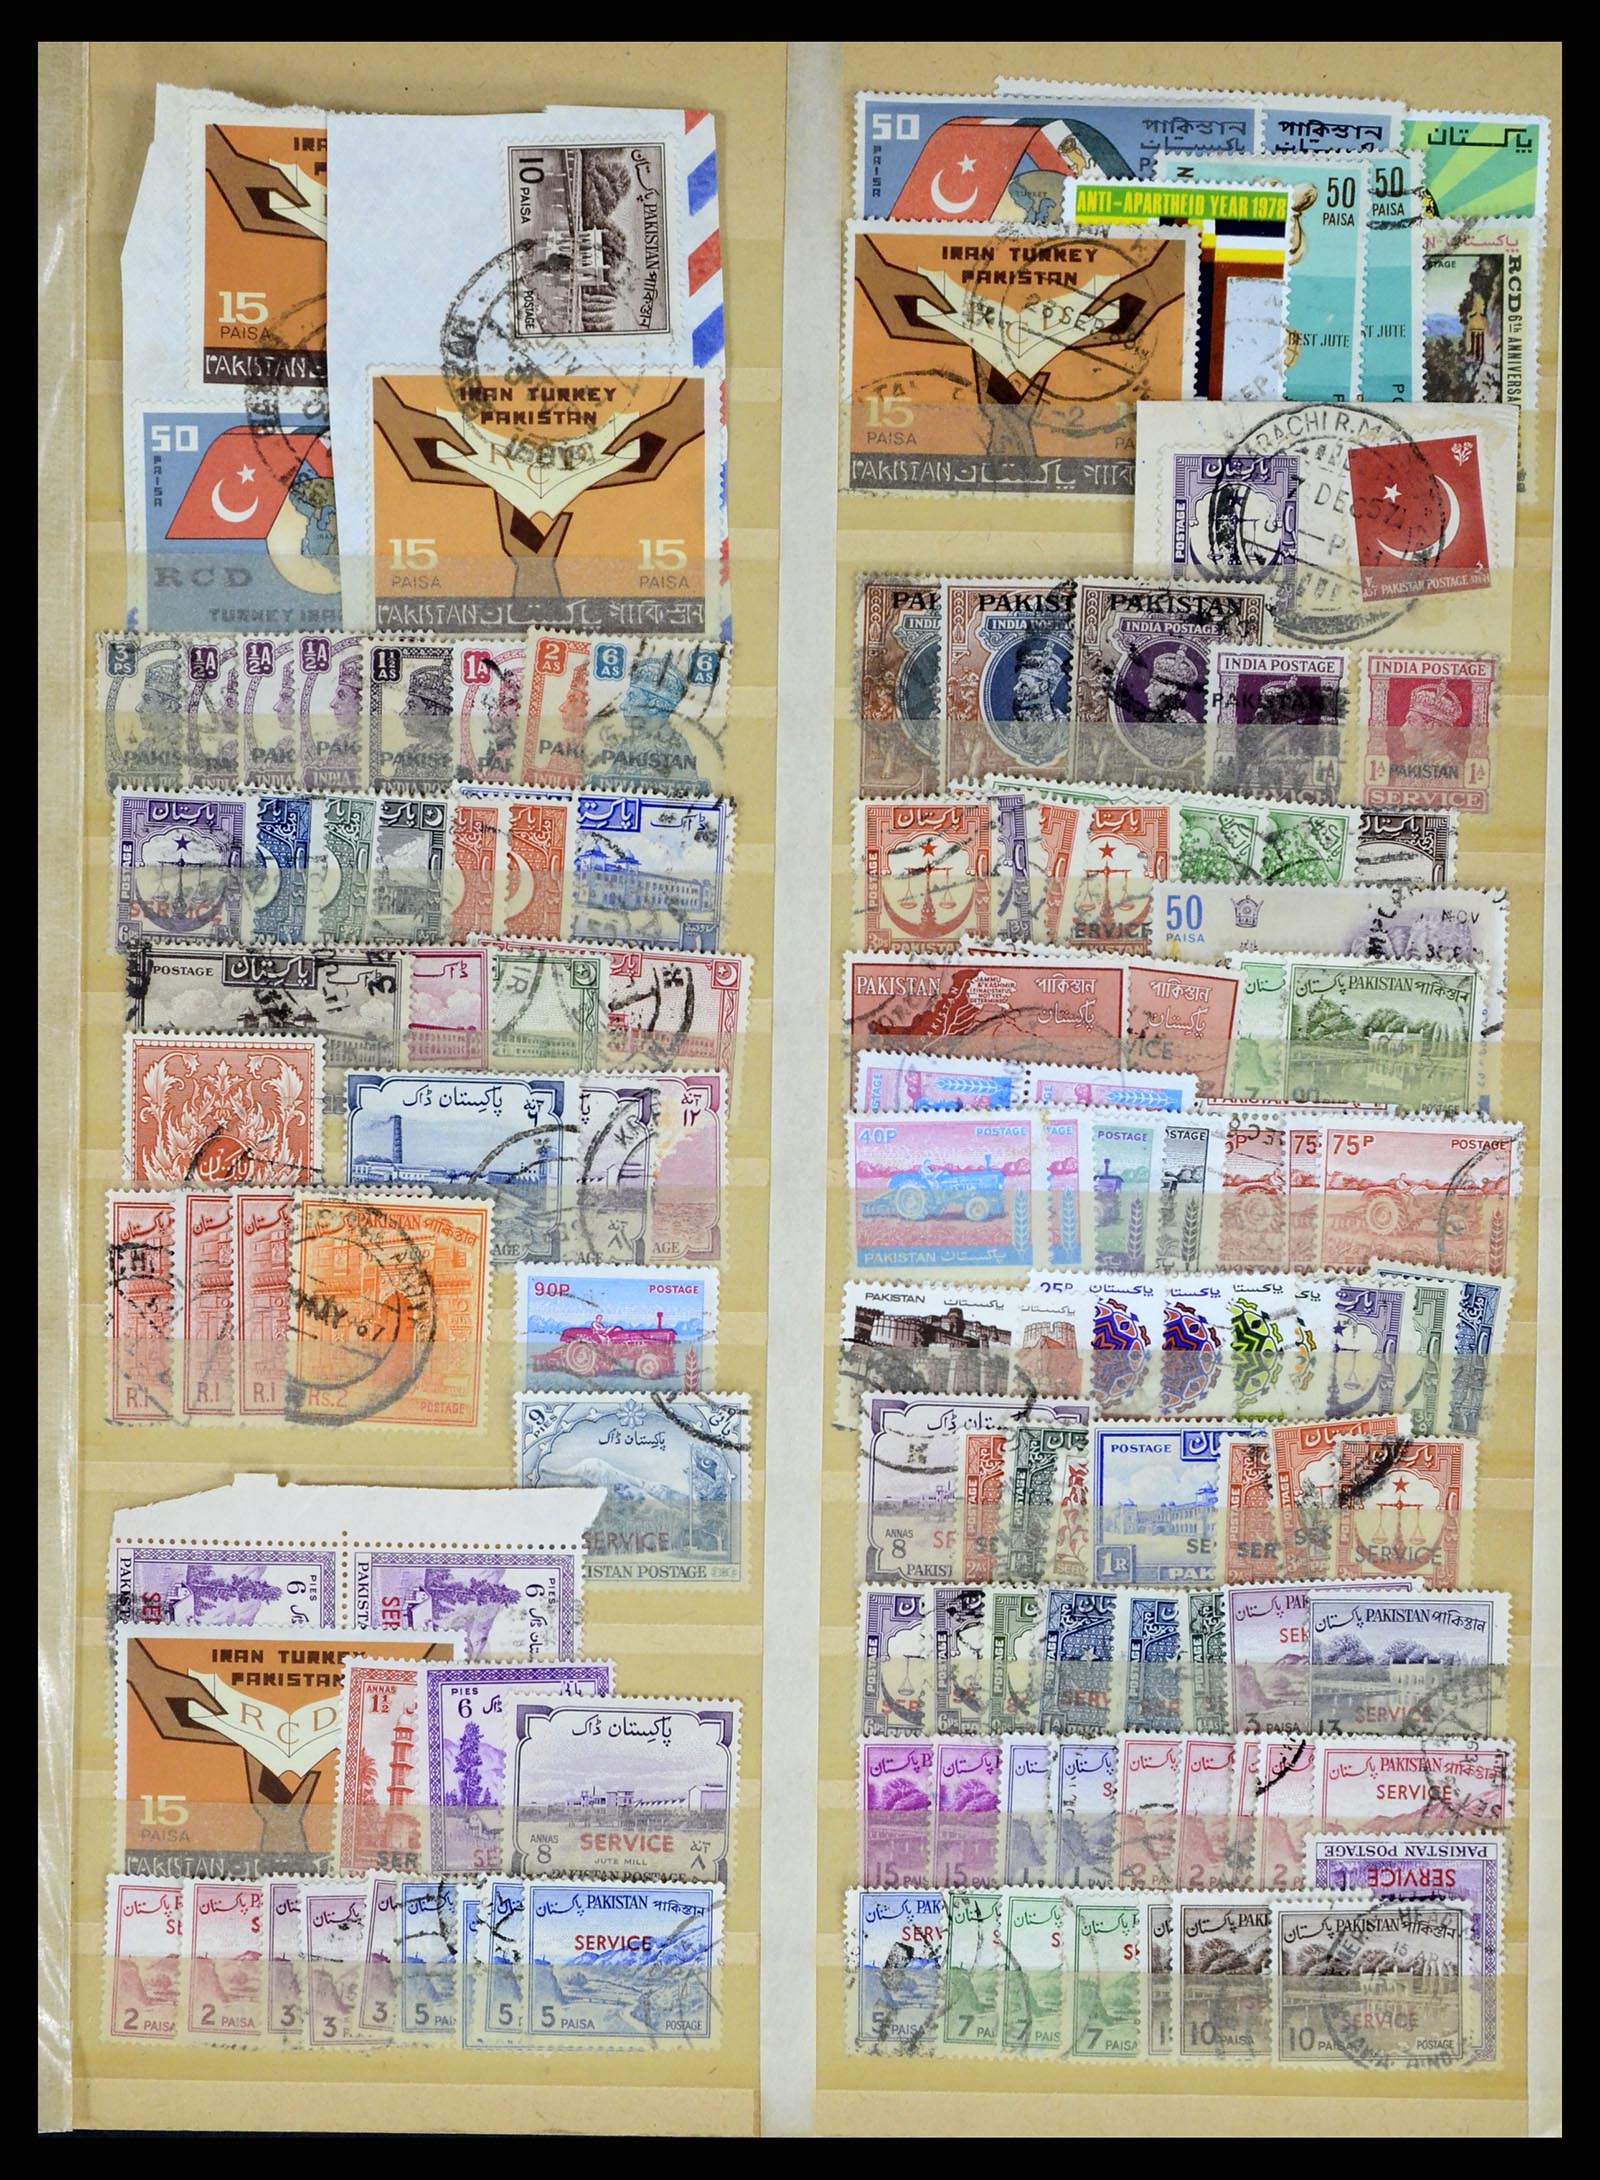 37619 328 - Stamp collection 37619 Pakistan/Bangladesh 1947-2000.